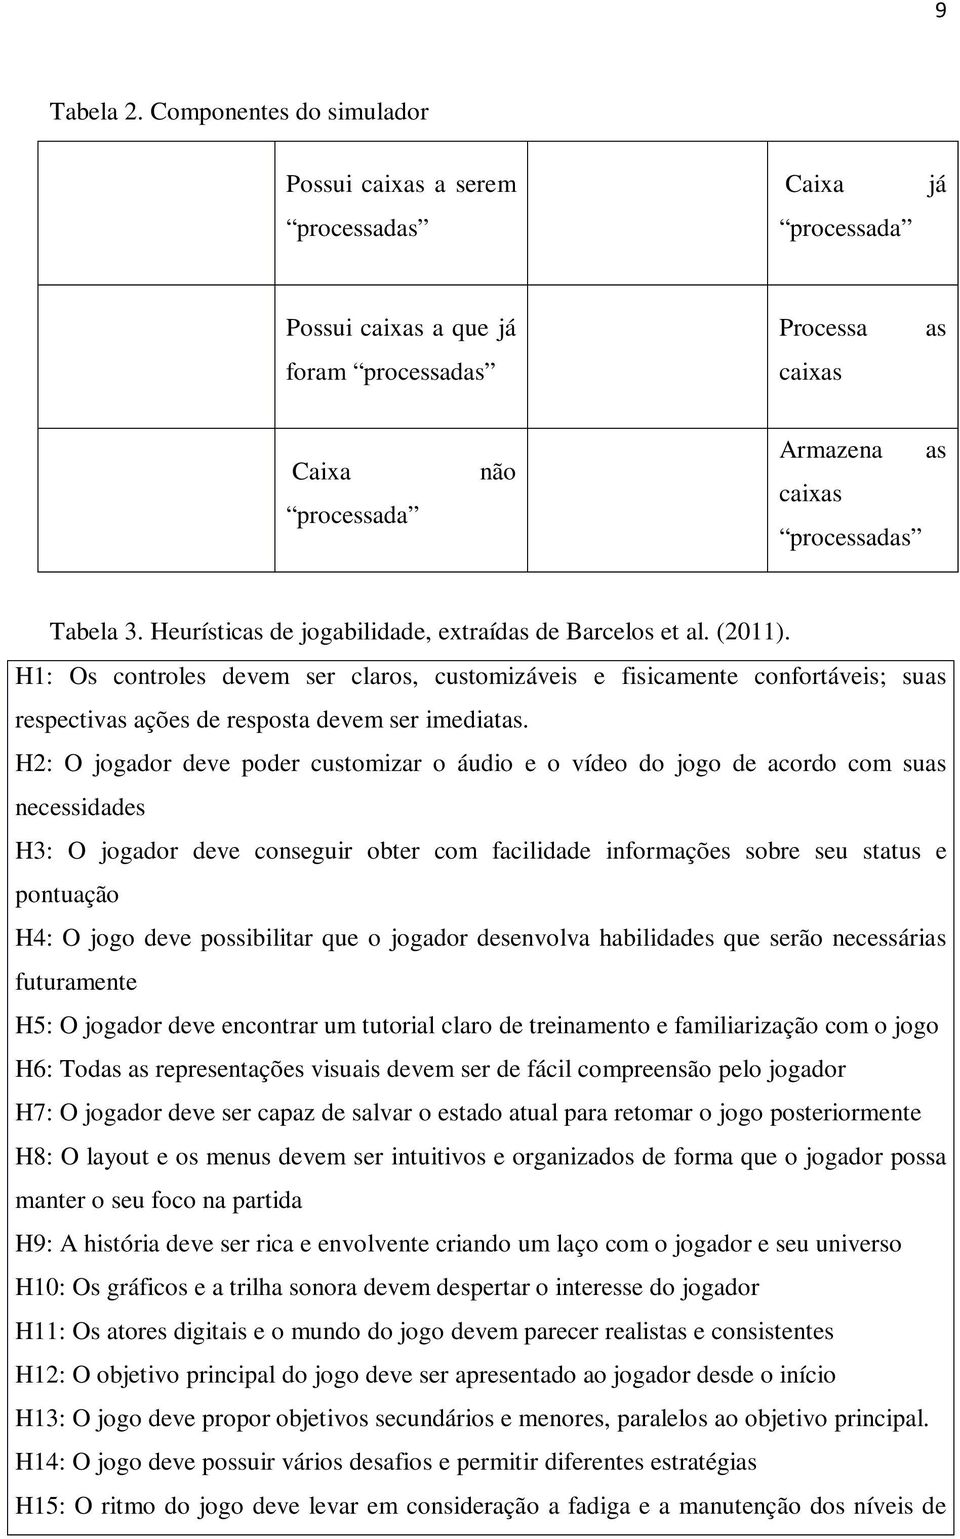 Heurísticas de jogabilidade, extraídas de Barcelos et al. (2011). H1: Os controles devem ser claros, customizáveis e fisicamente confortáveis; suas respectivas ações de resposta devem ser imediatas.